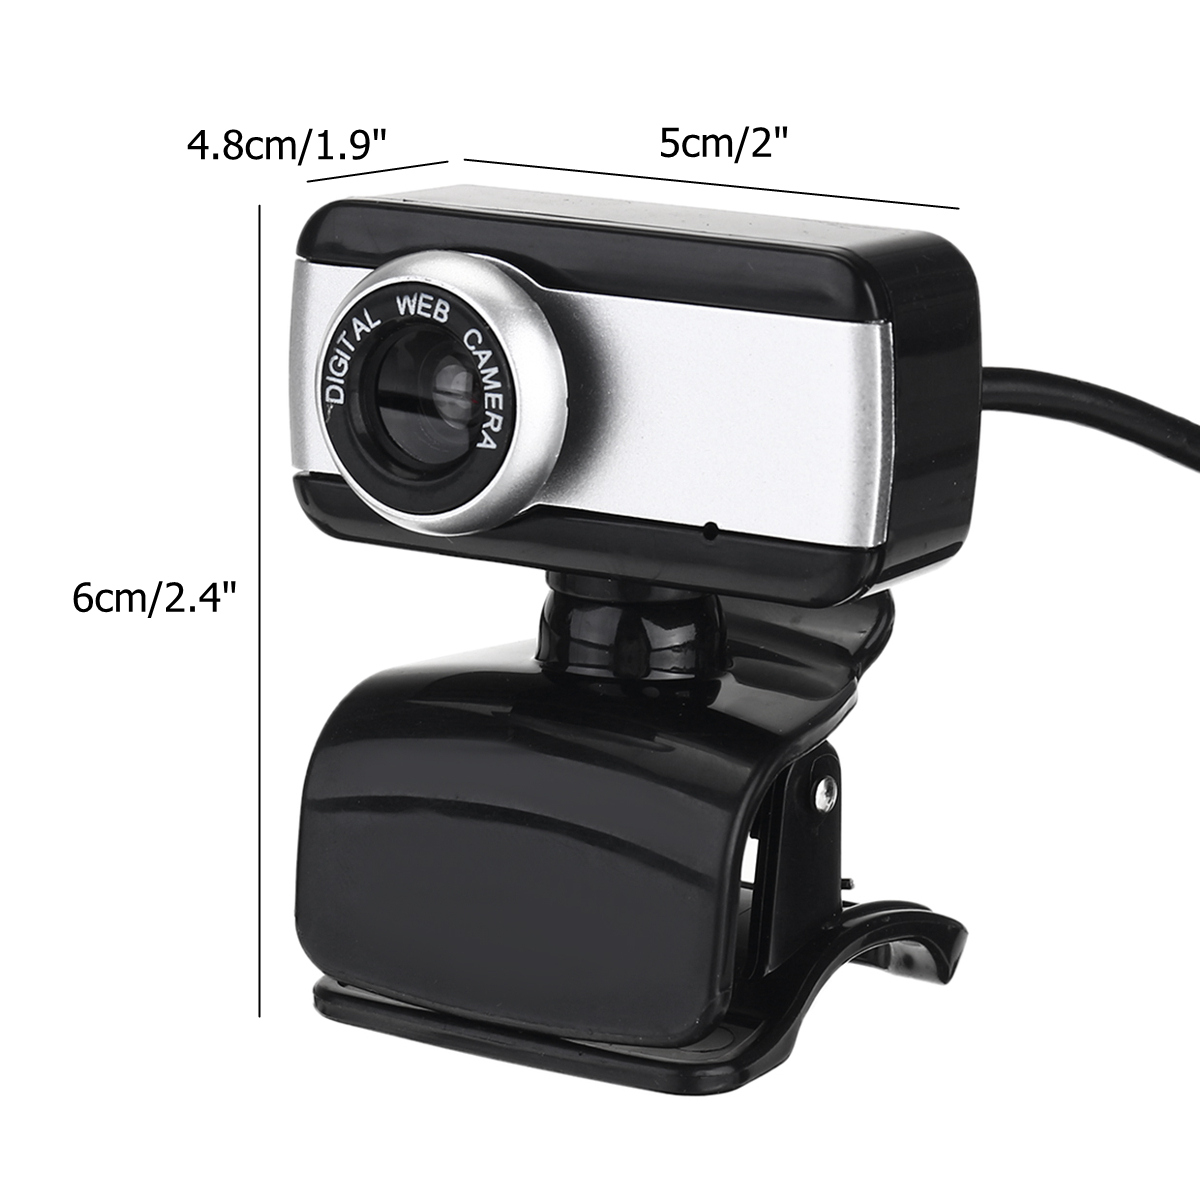 720P-HD-Webcam-CMOS-50-Mega-Pixels-USB20-Web-Camera-Built-in-Microphone-Camera-for-Desktop-Computer--1769965-8